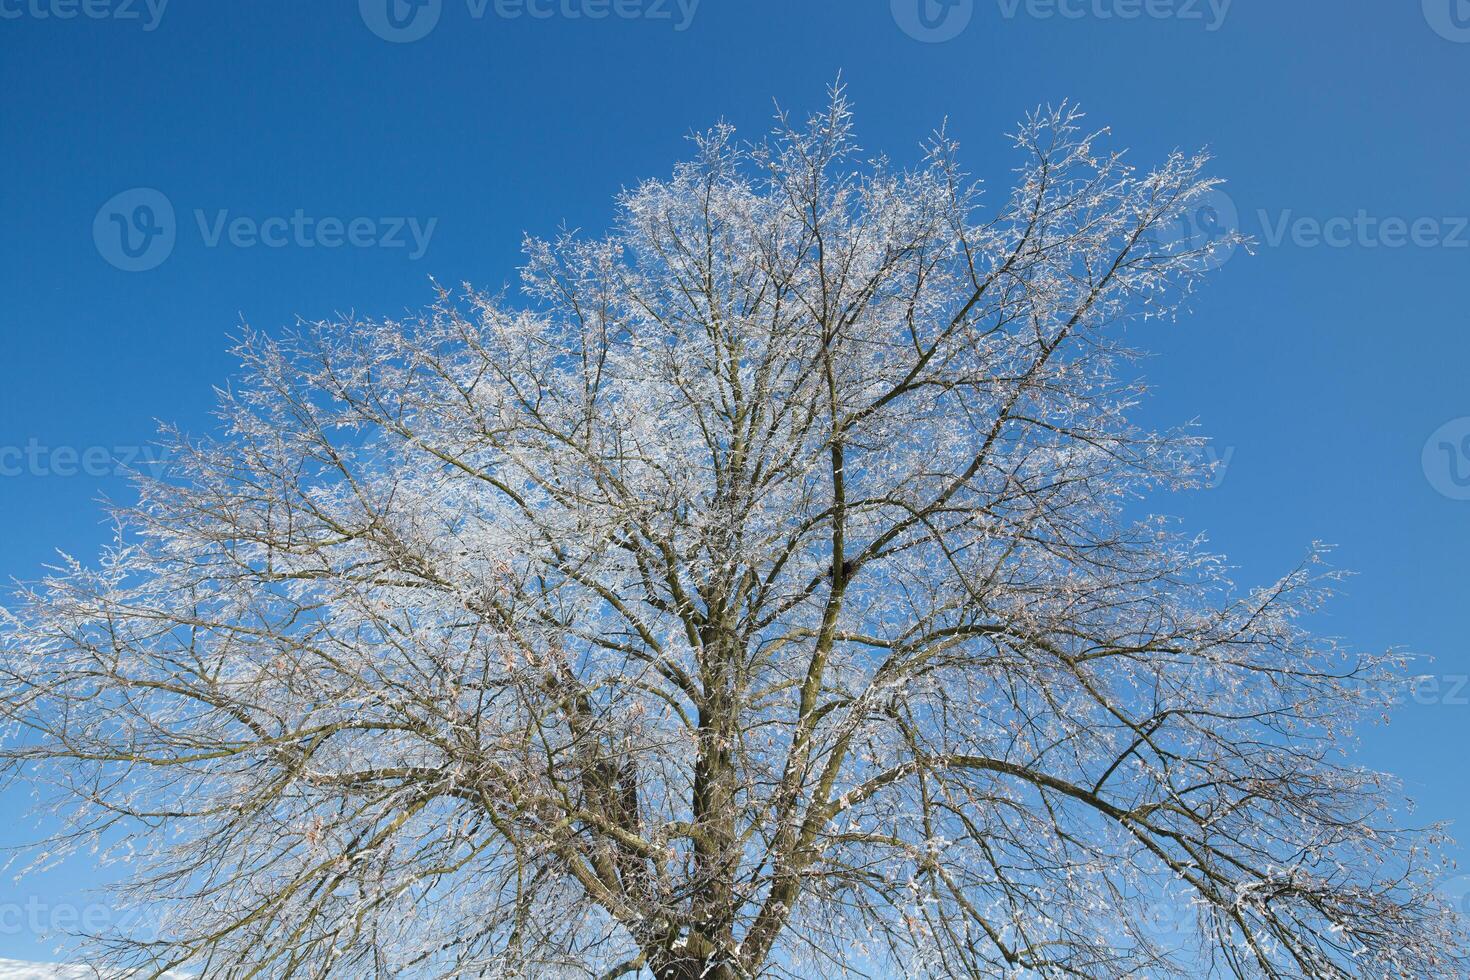 bevroren boom Aan winter veld- en blauw lucht foto